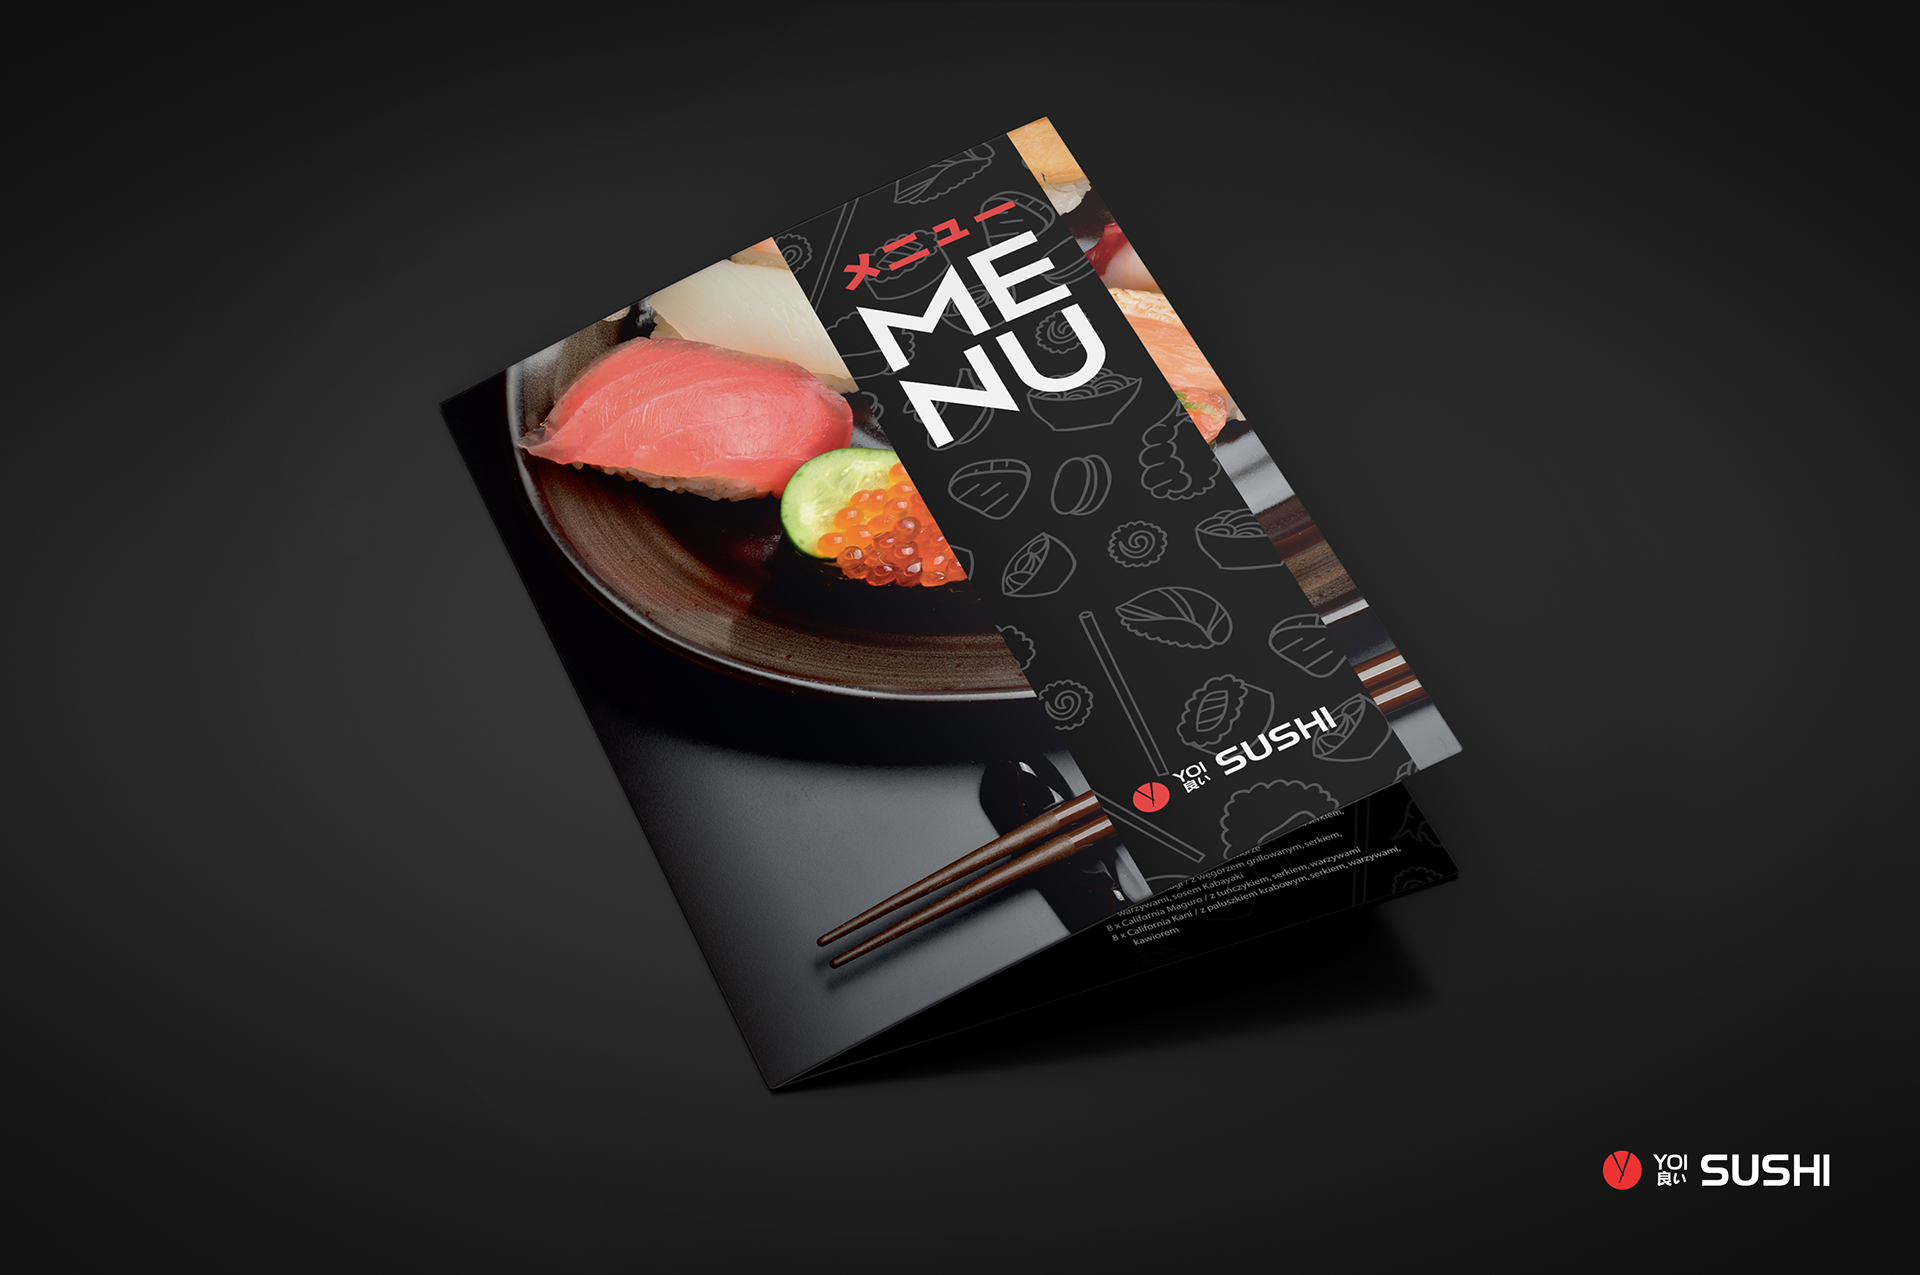 Sushi menu leaflet restaurant design.